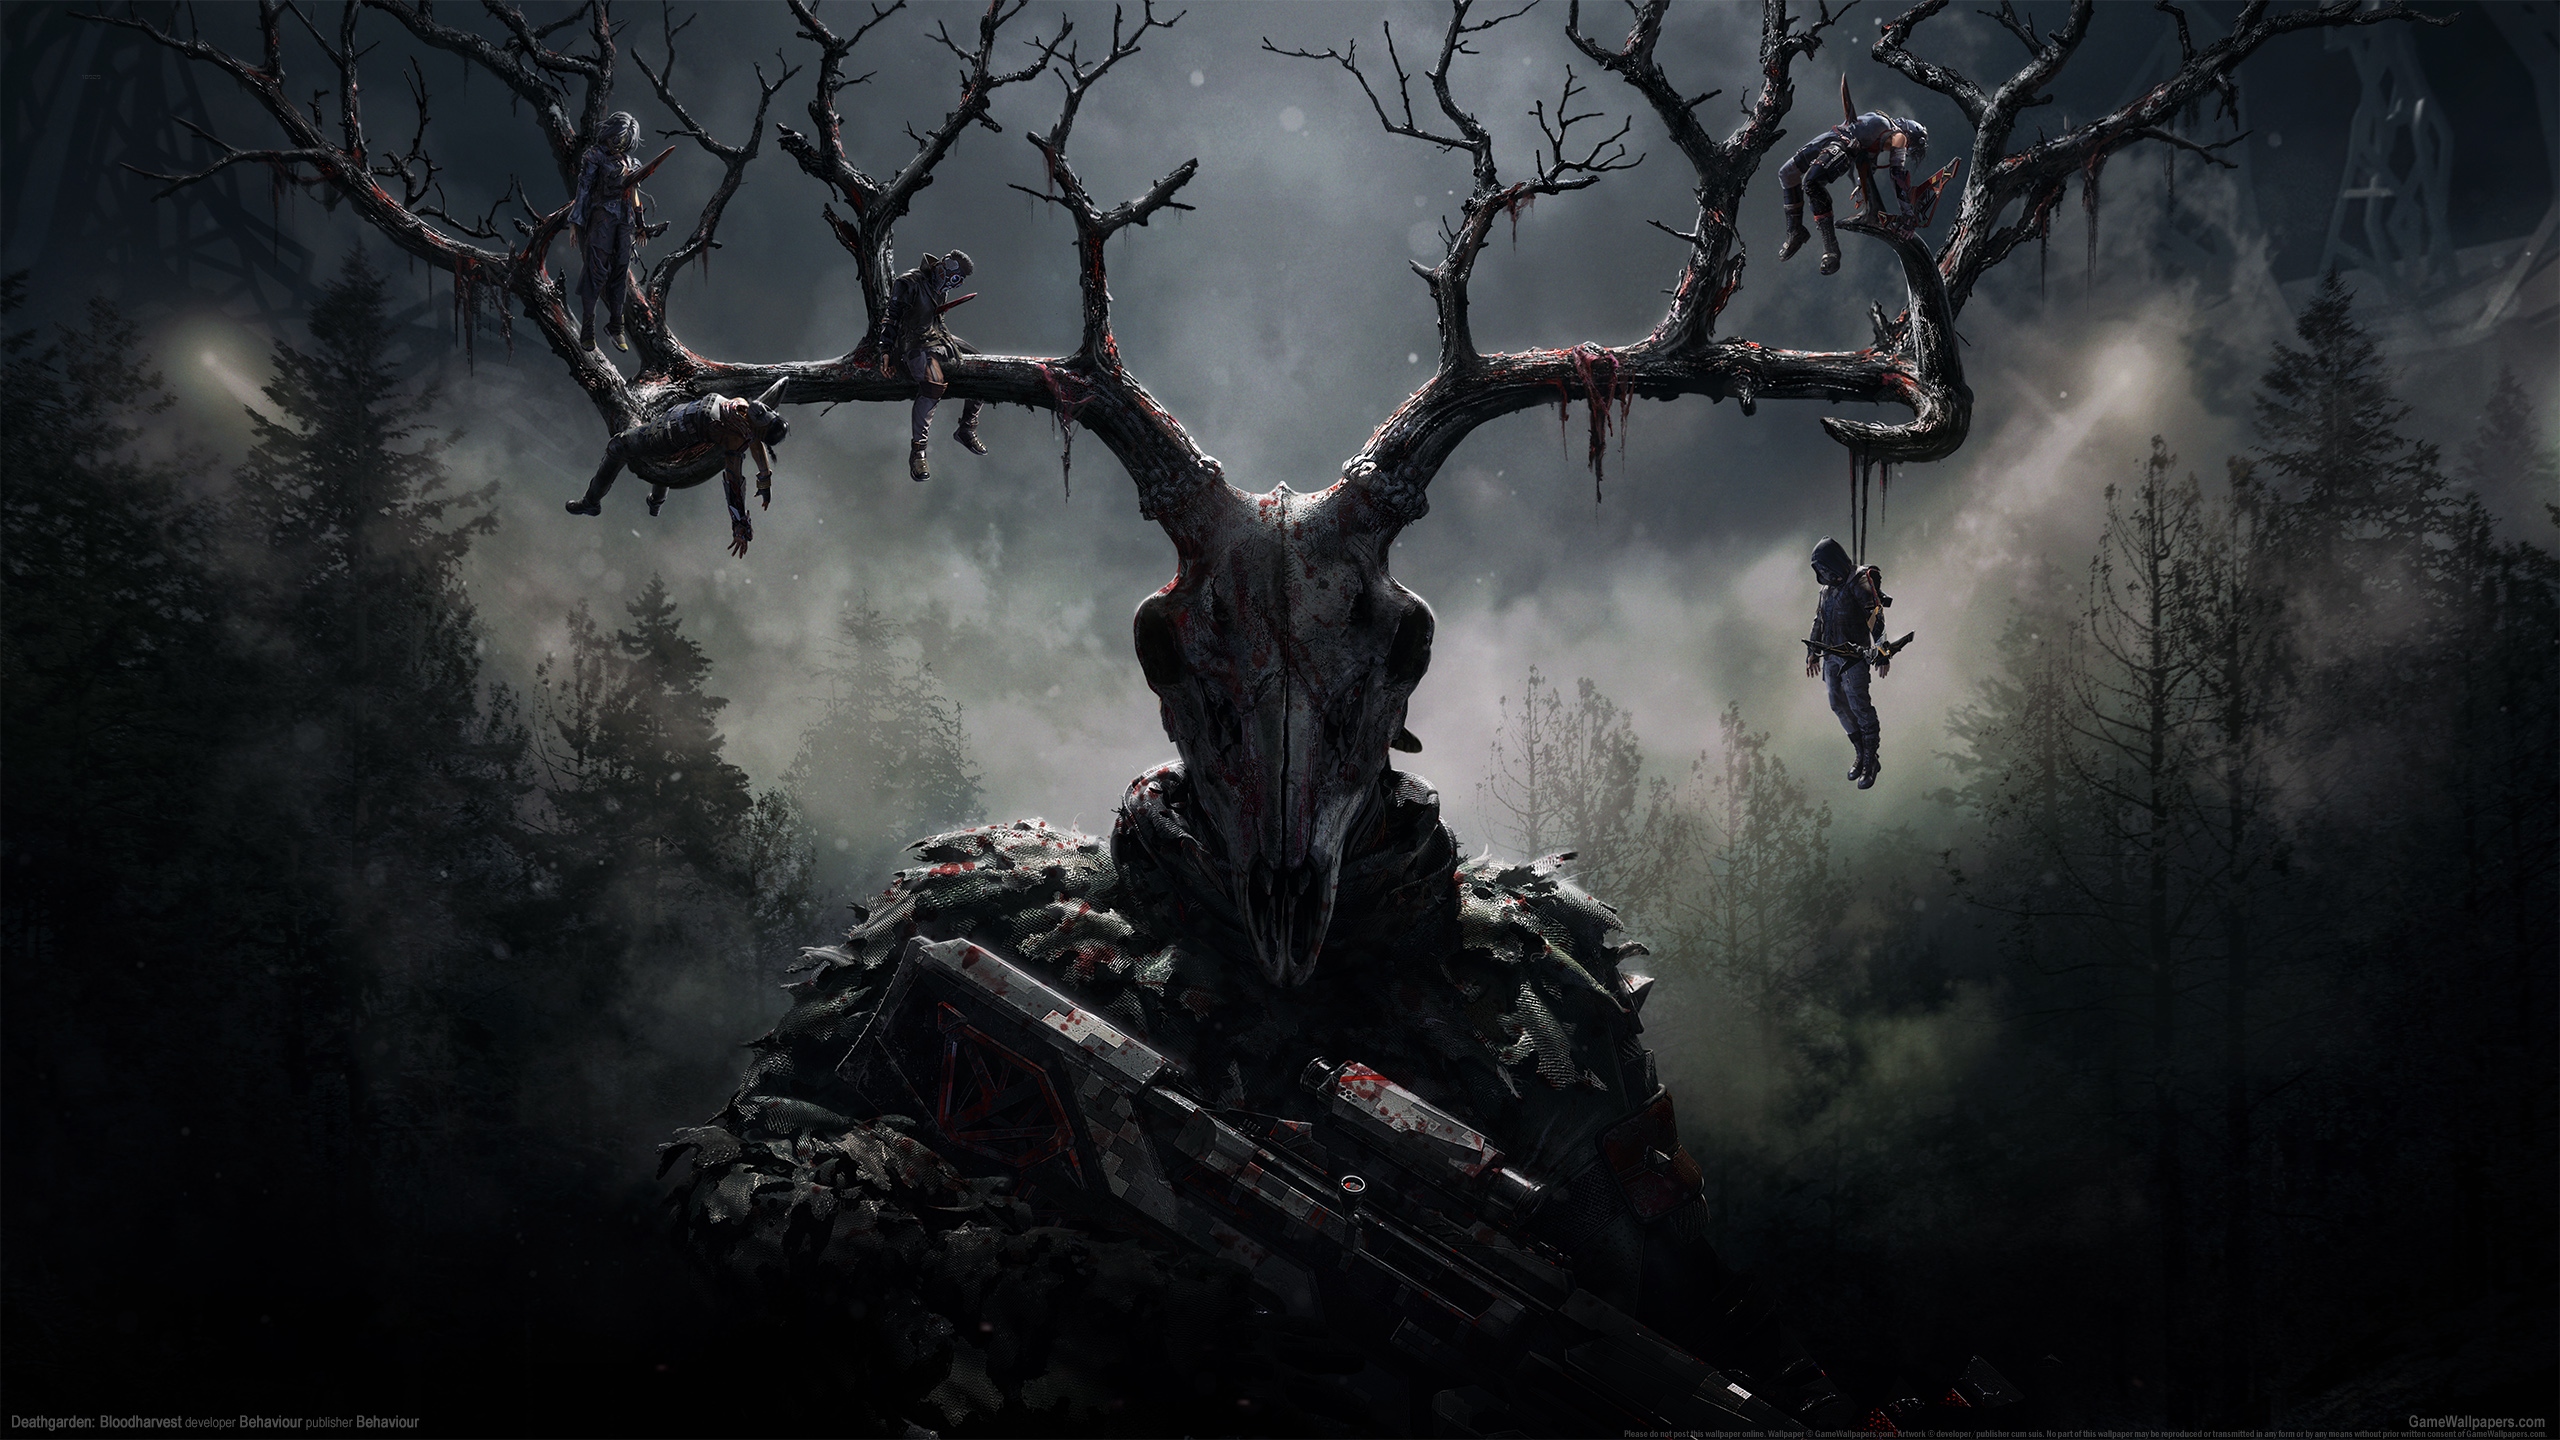 Deathgarden: Bloodharvest 2560x1440 wallpaper or background 01